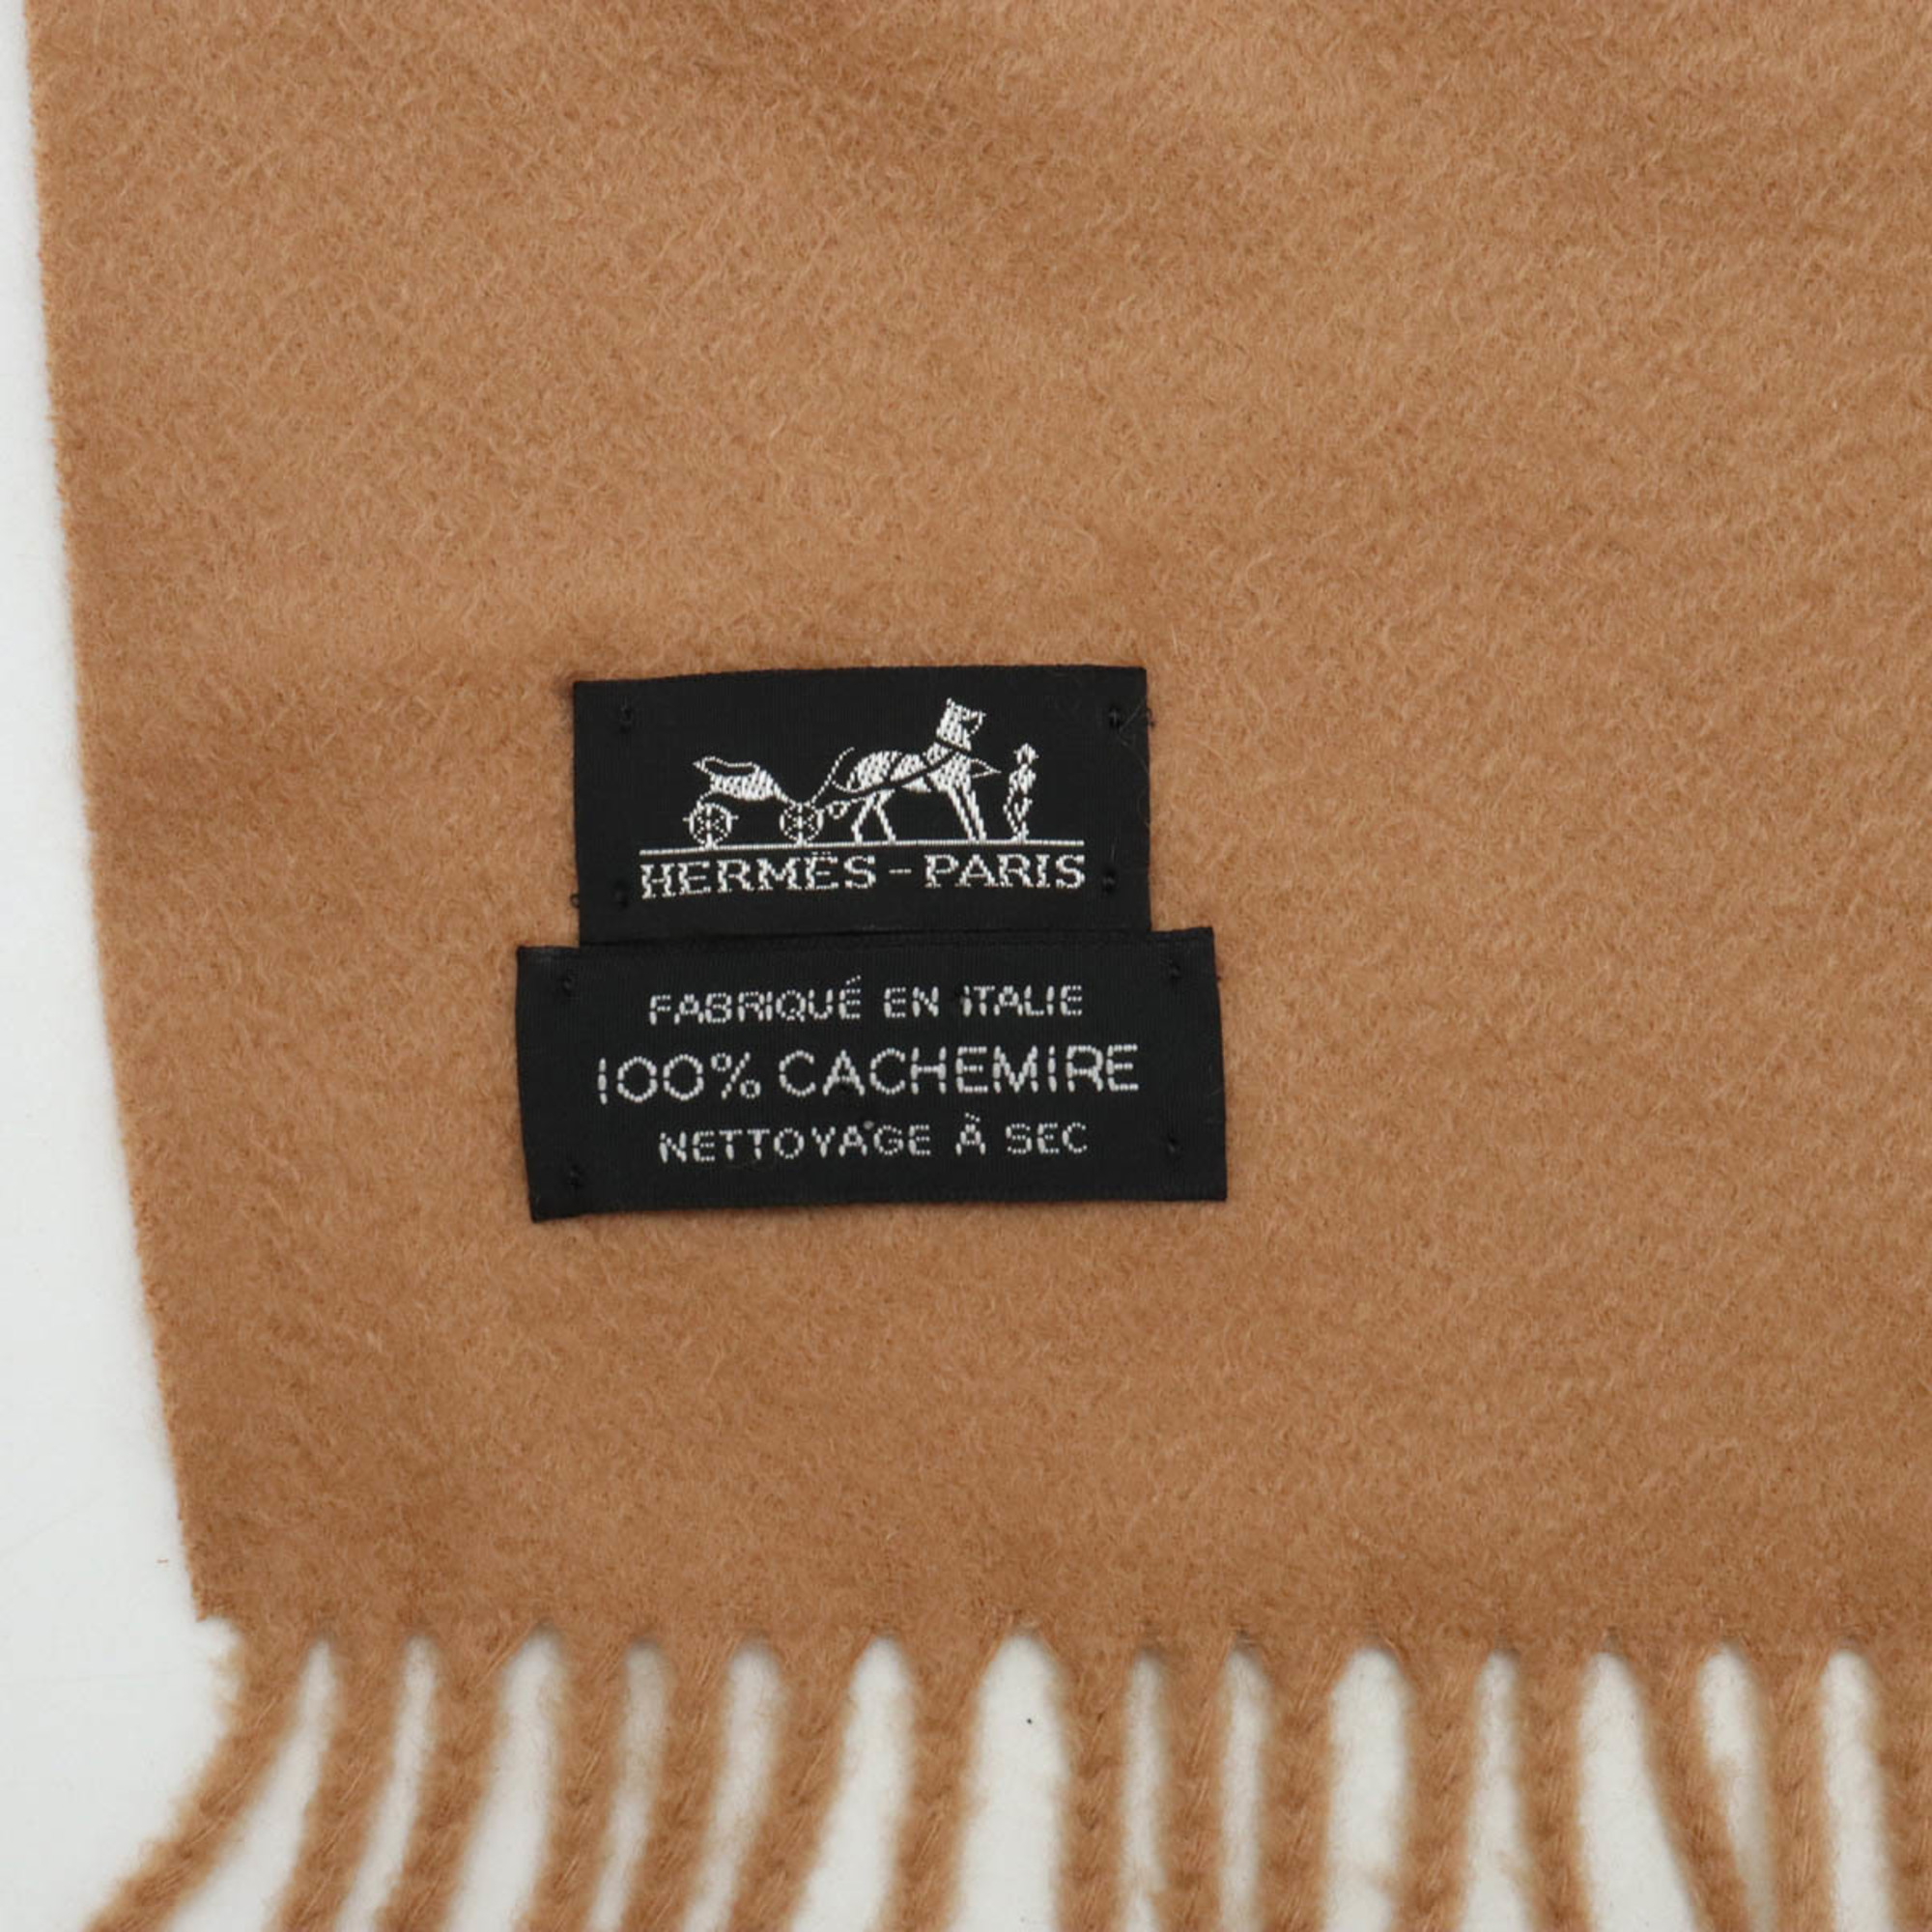 HERMES Large scarf, 100% cashmere, camel, brown